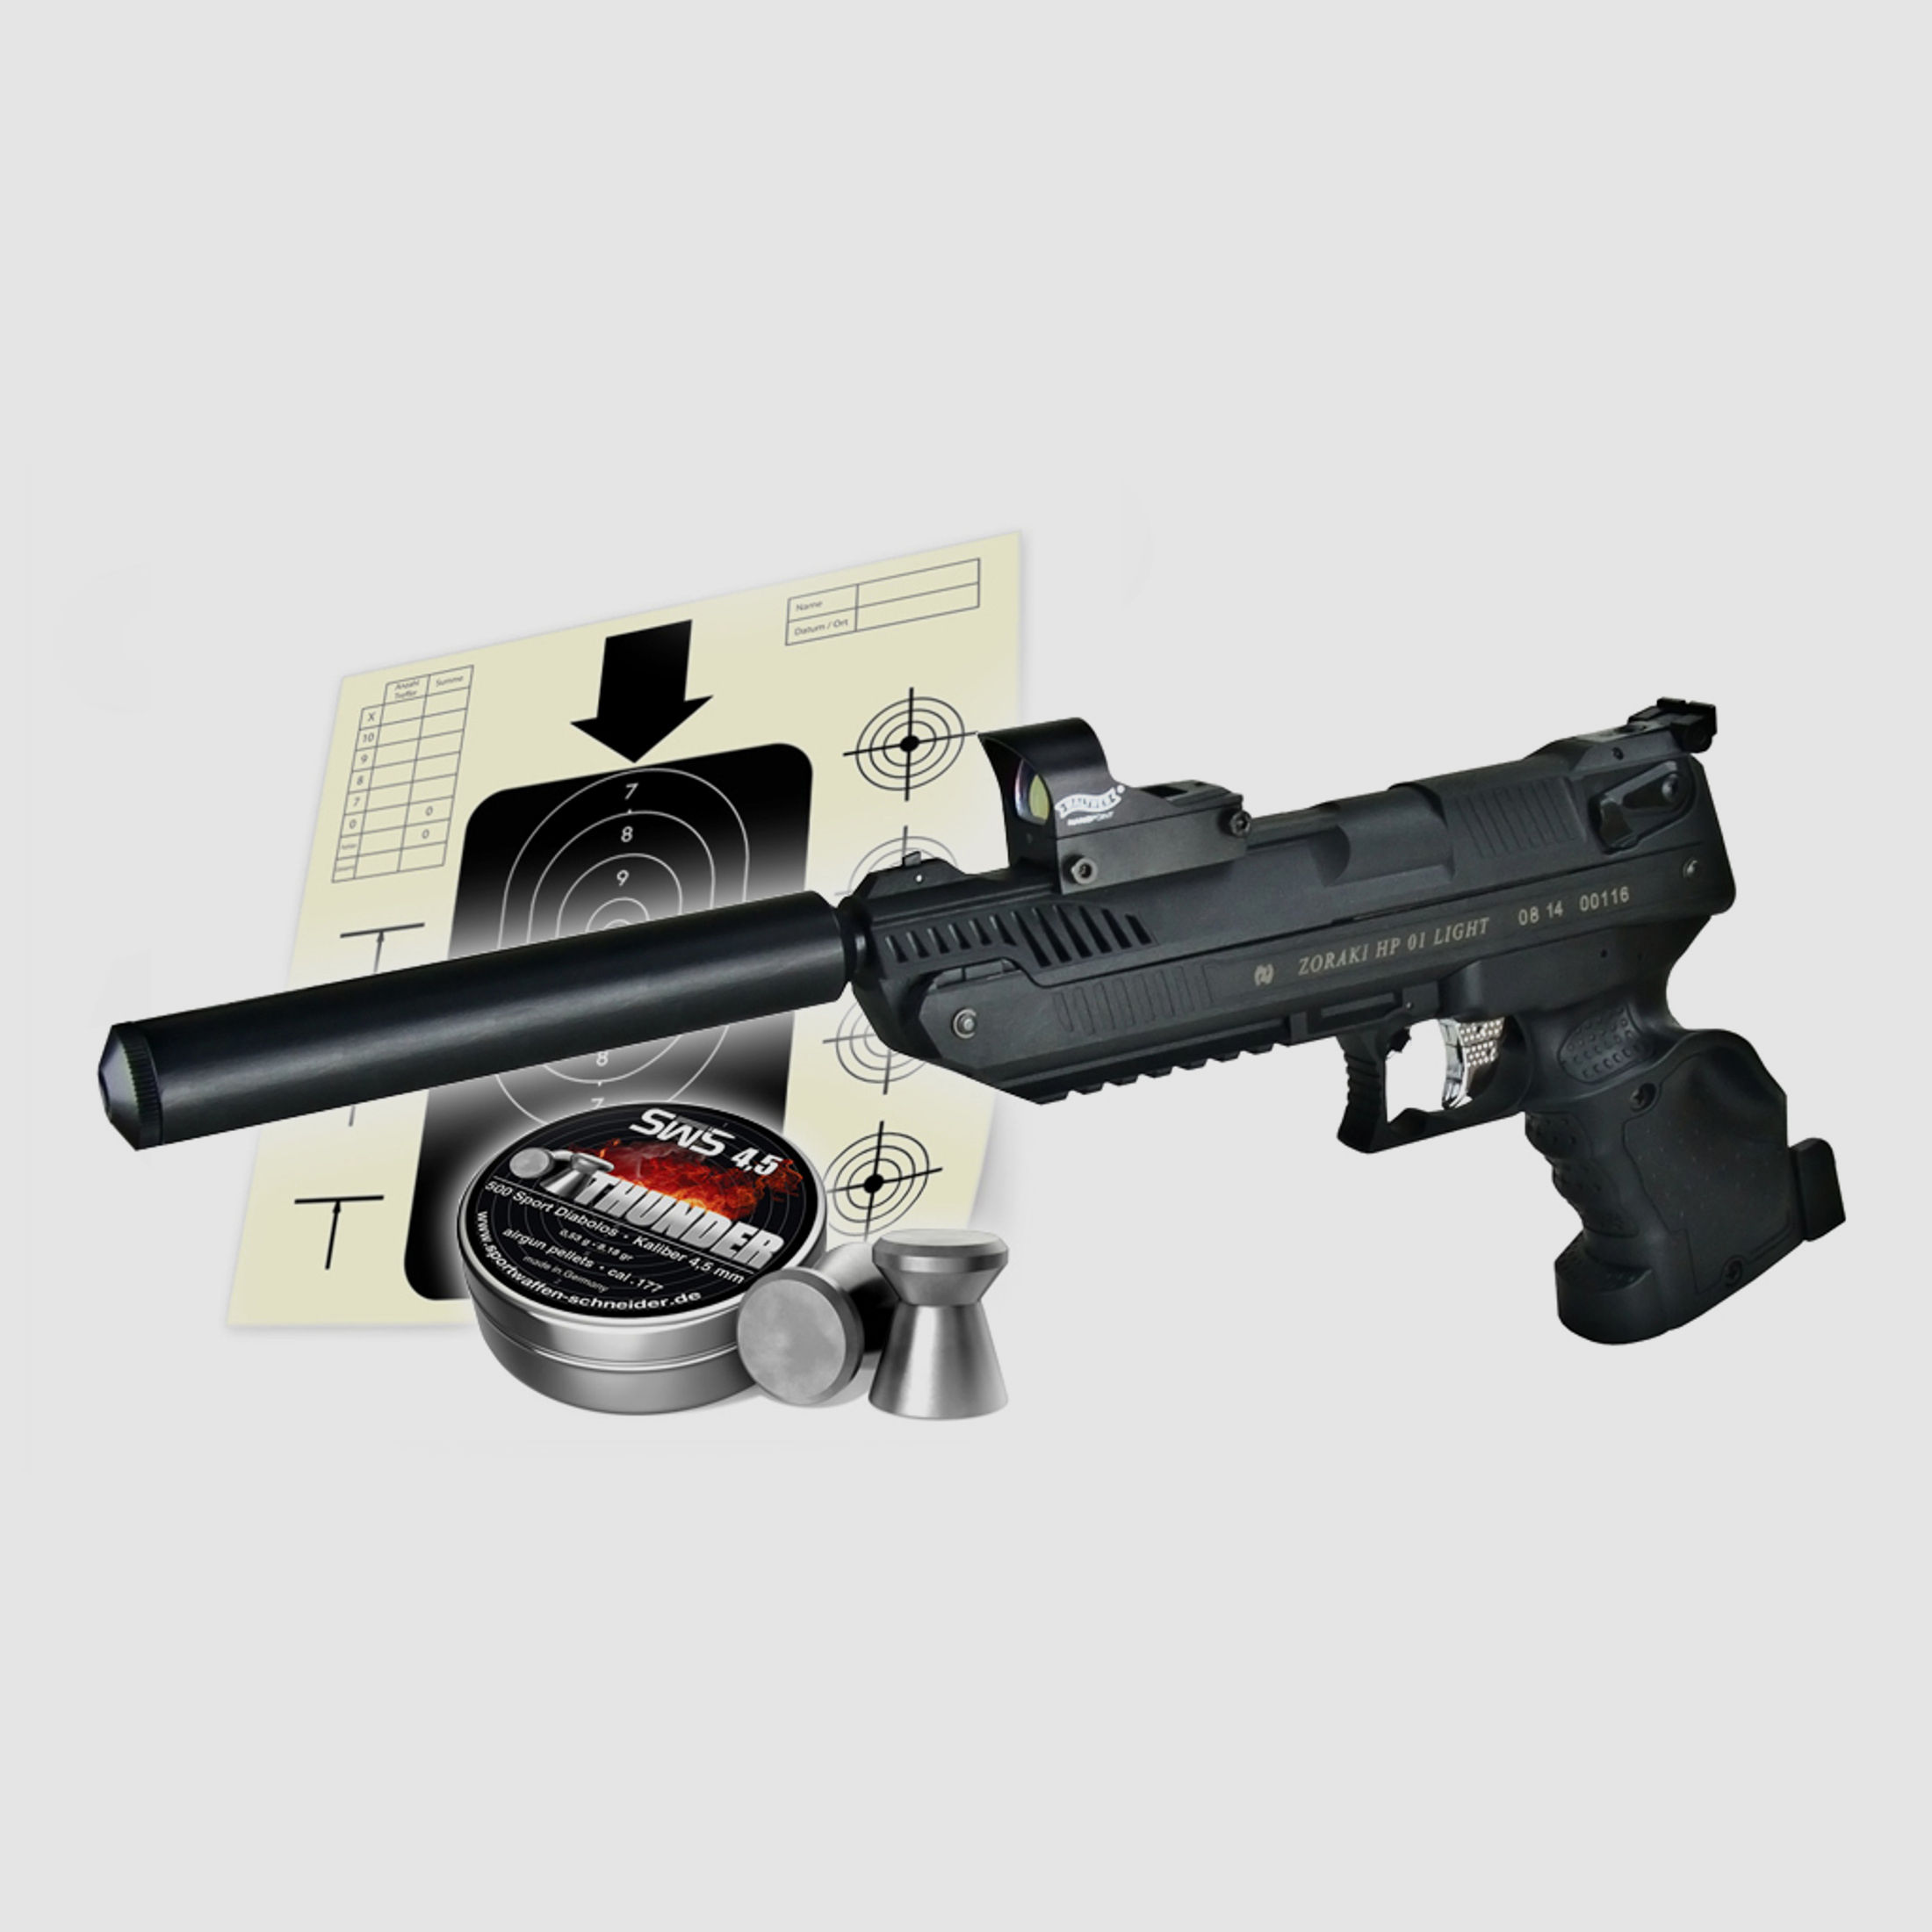 Vorkompressions Luftpistole Zoraki HP-01 fĂĽr RechtshĂ¤nder Kaliber 4,5 mm (P18) + Red Dot SchalldĂ¤mpfer Diabolos Zielscheiben